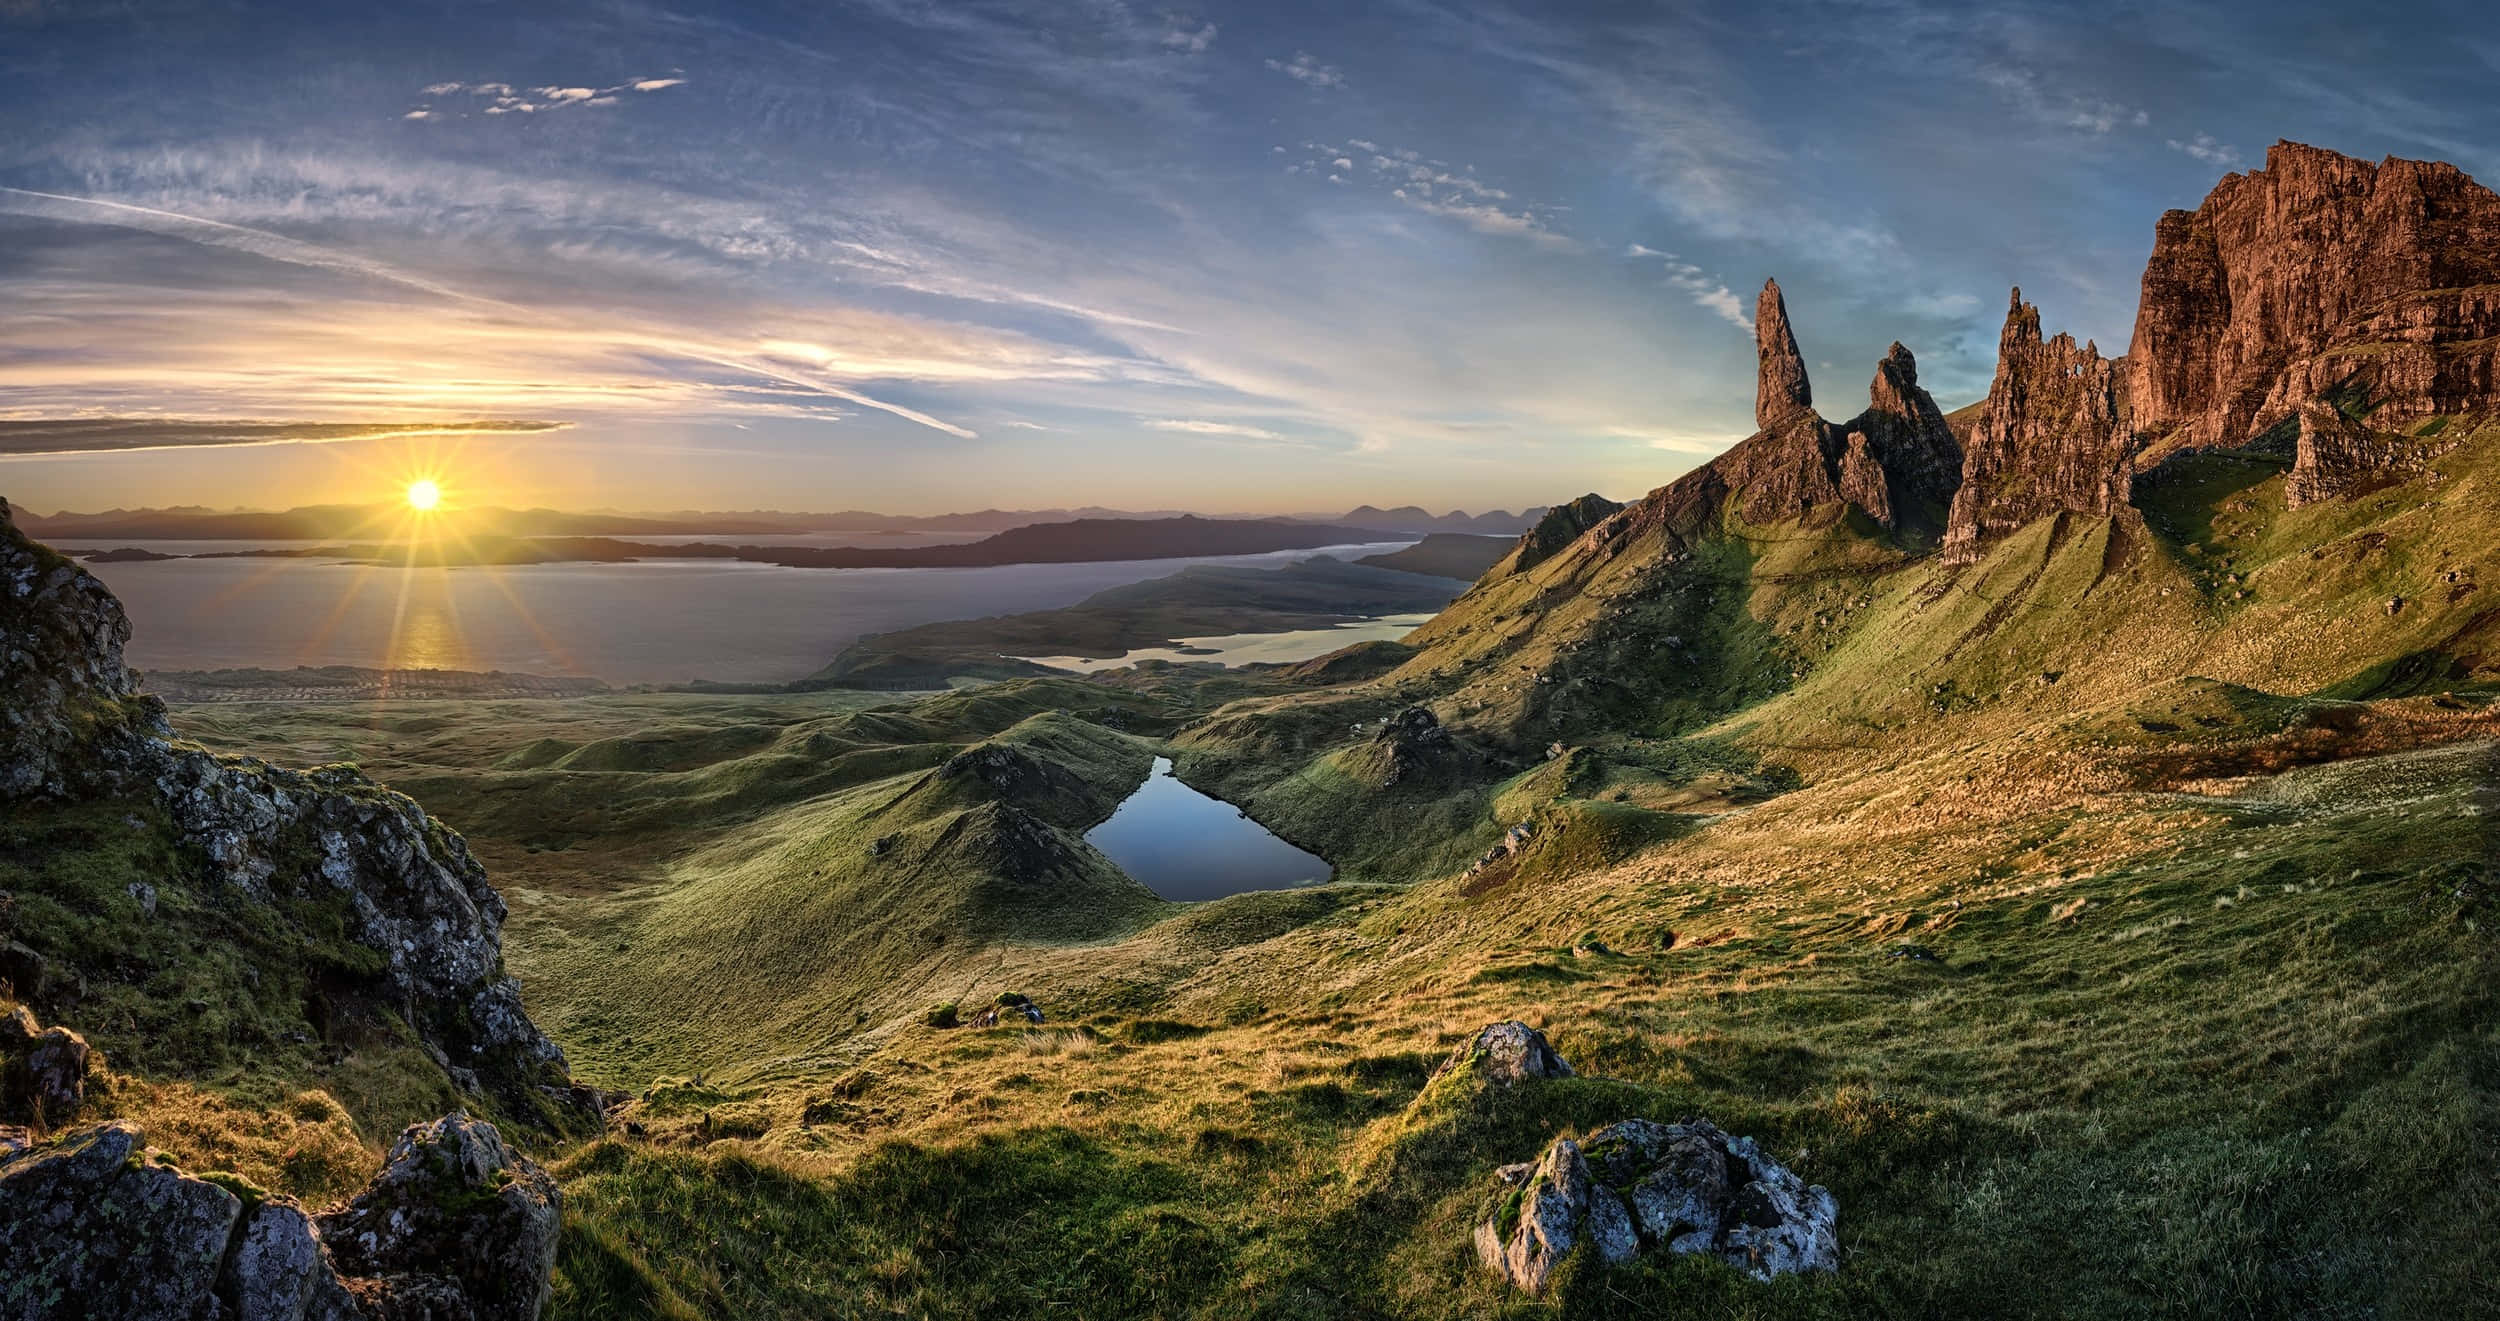 Impresionantepaisaje Escocés Con Majestuosas Montañas Y Tranquilo Lago.